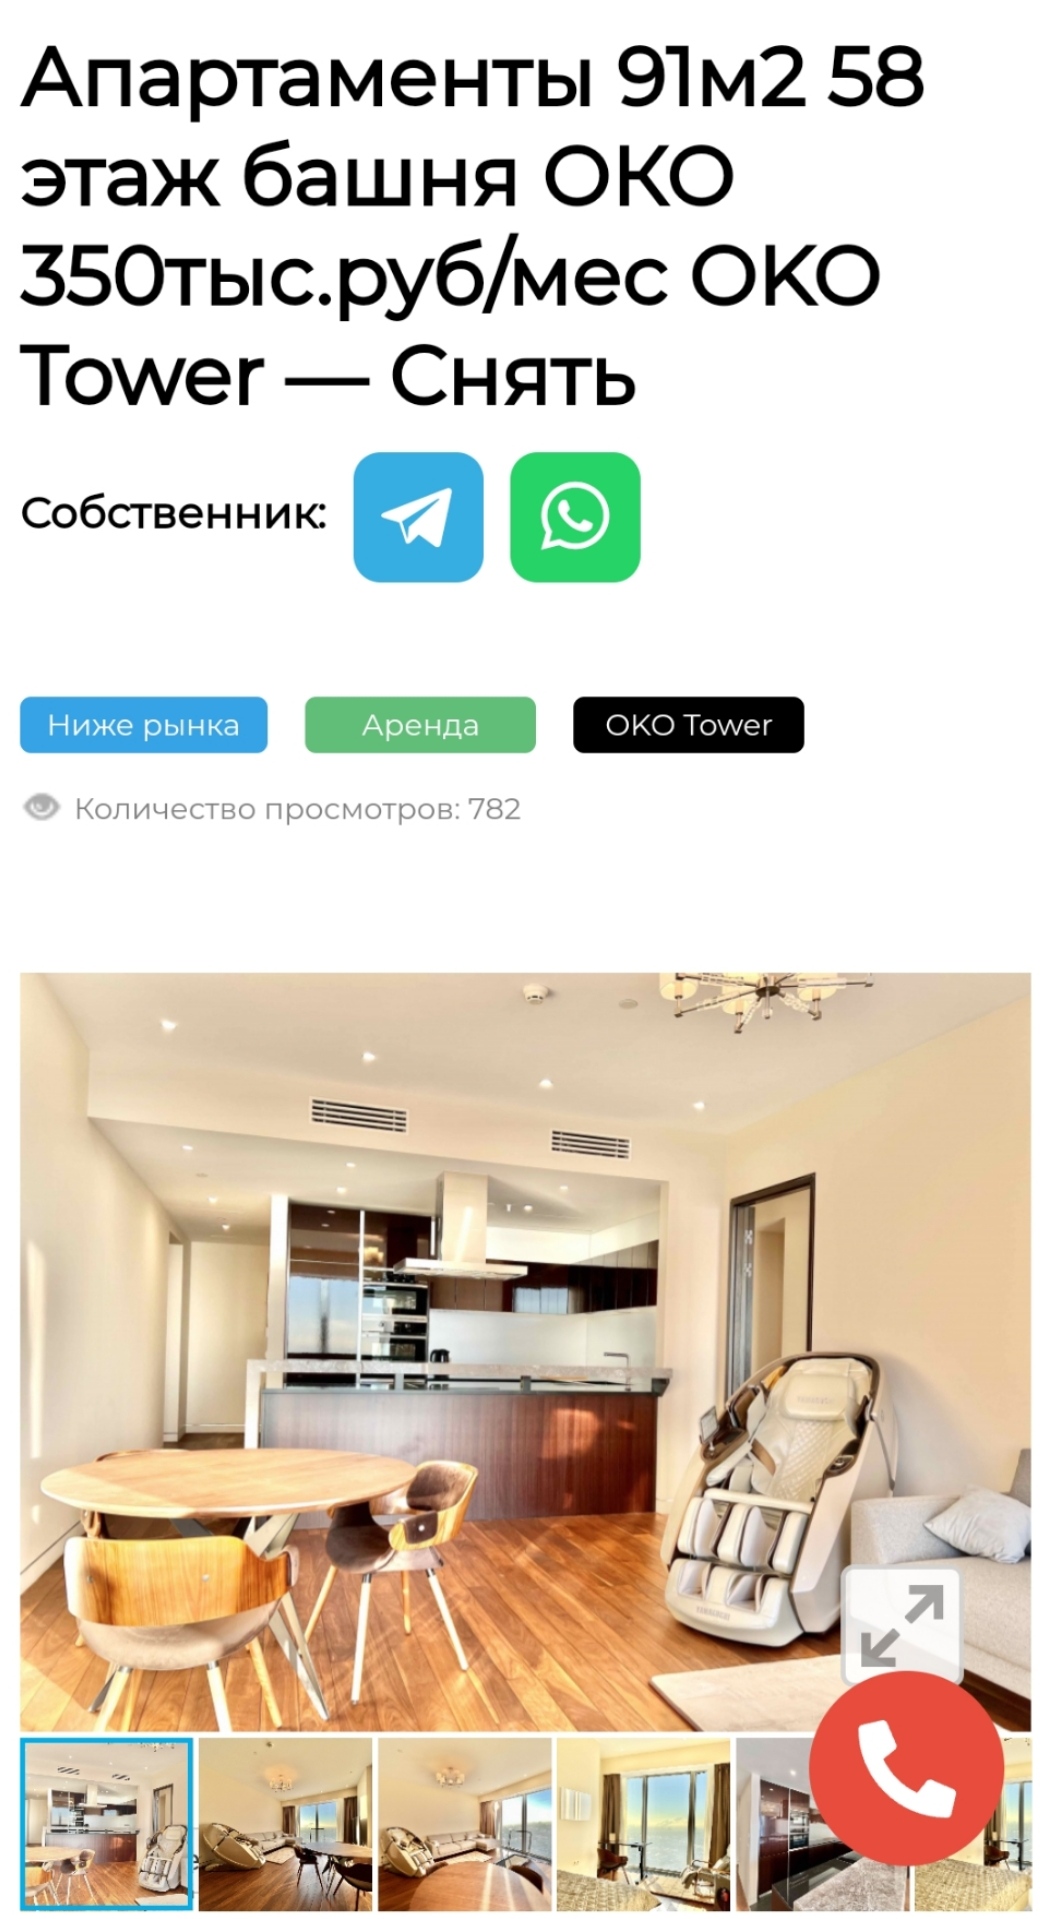 Квартиры в Москва-Сити для жизни и работы! Высокие этажи , Панорамные виды! Москва-Сити Онлайн!